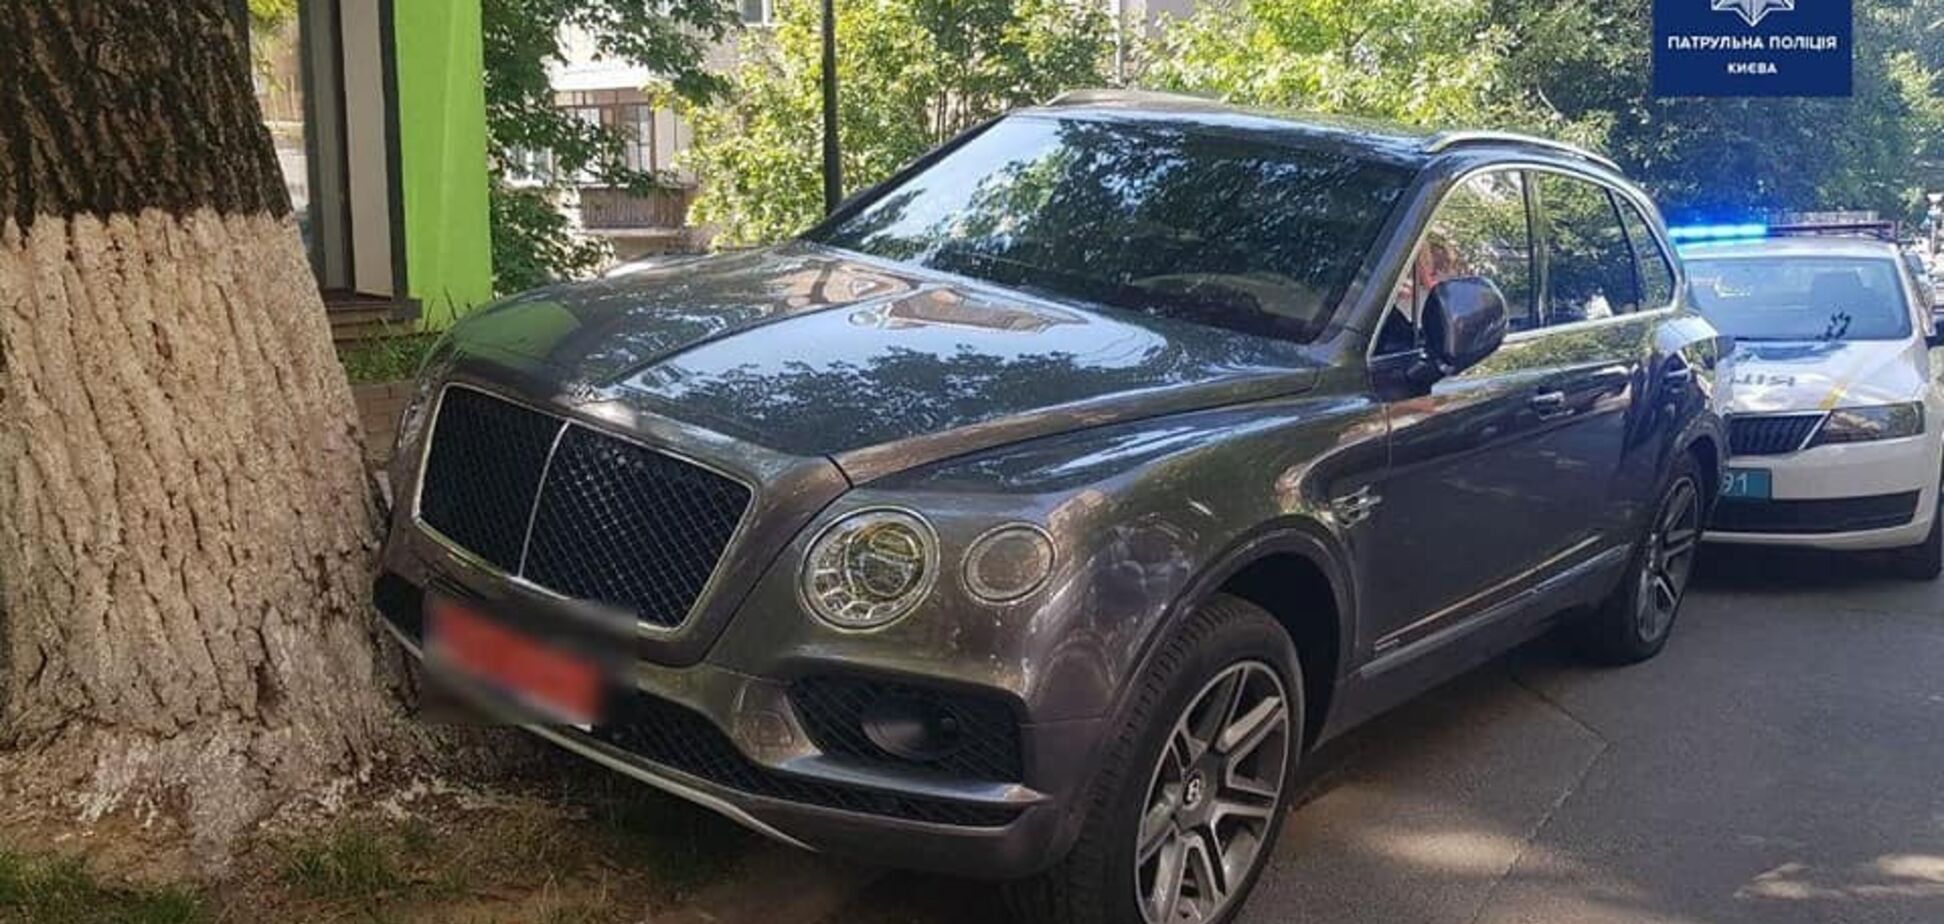 В Киеве водитель Bentley врезался в дерево и сломал патрульному руку